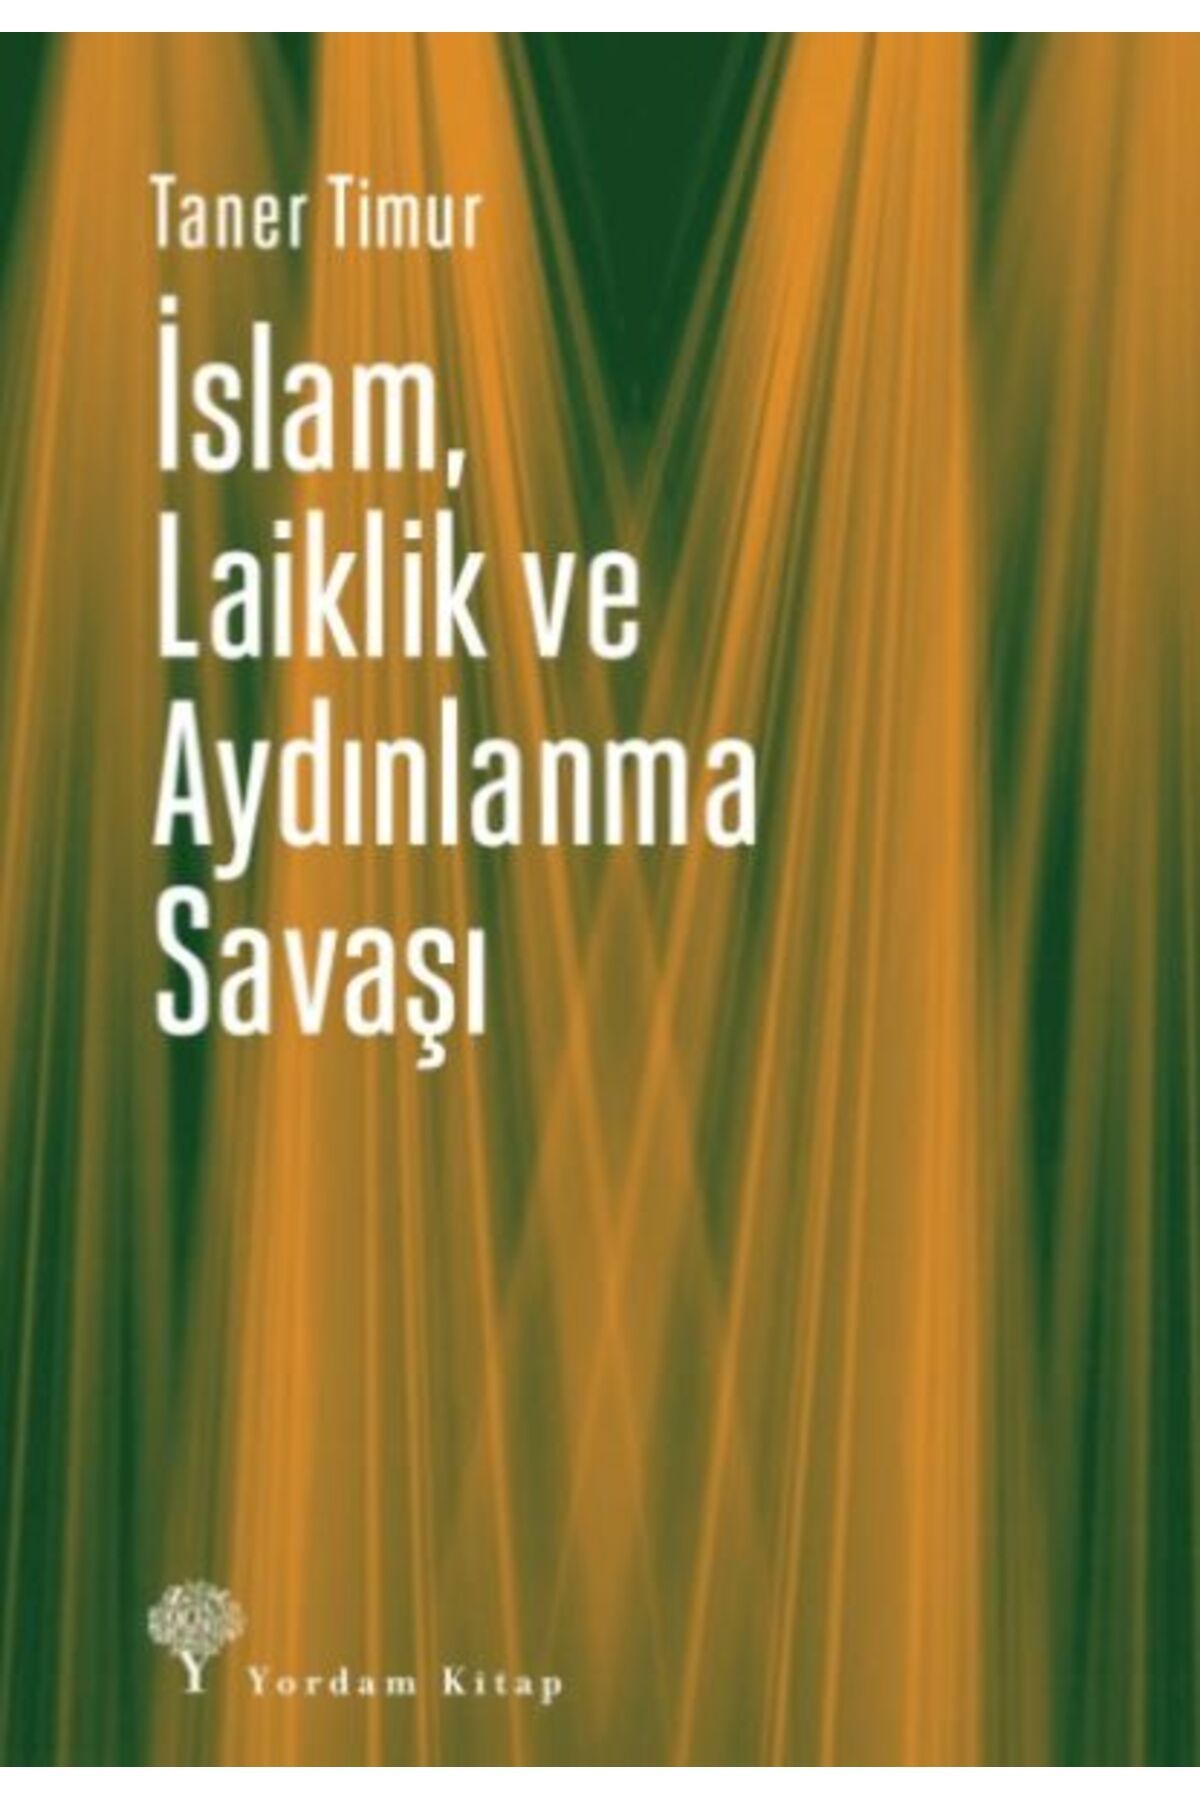 Yordam Kitap İslam, Laiklik ve Aydınlanma Savaşı